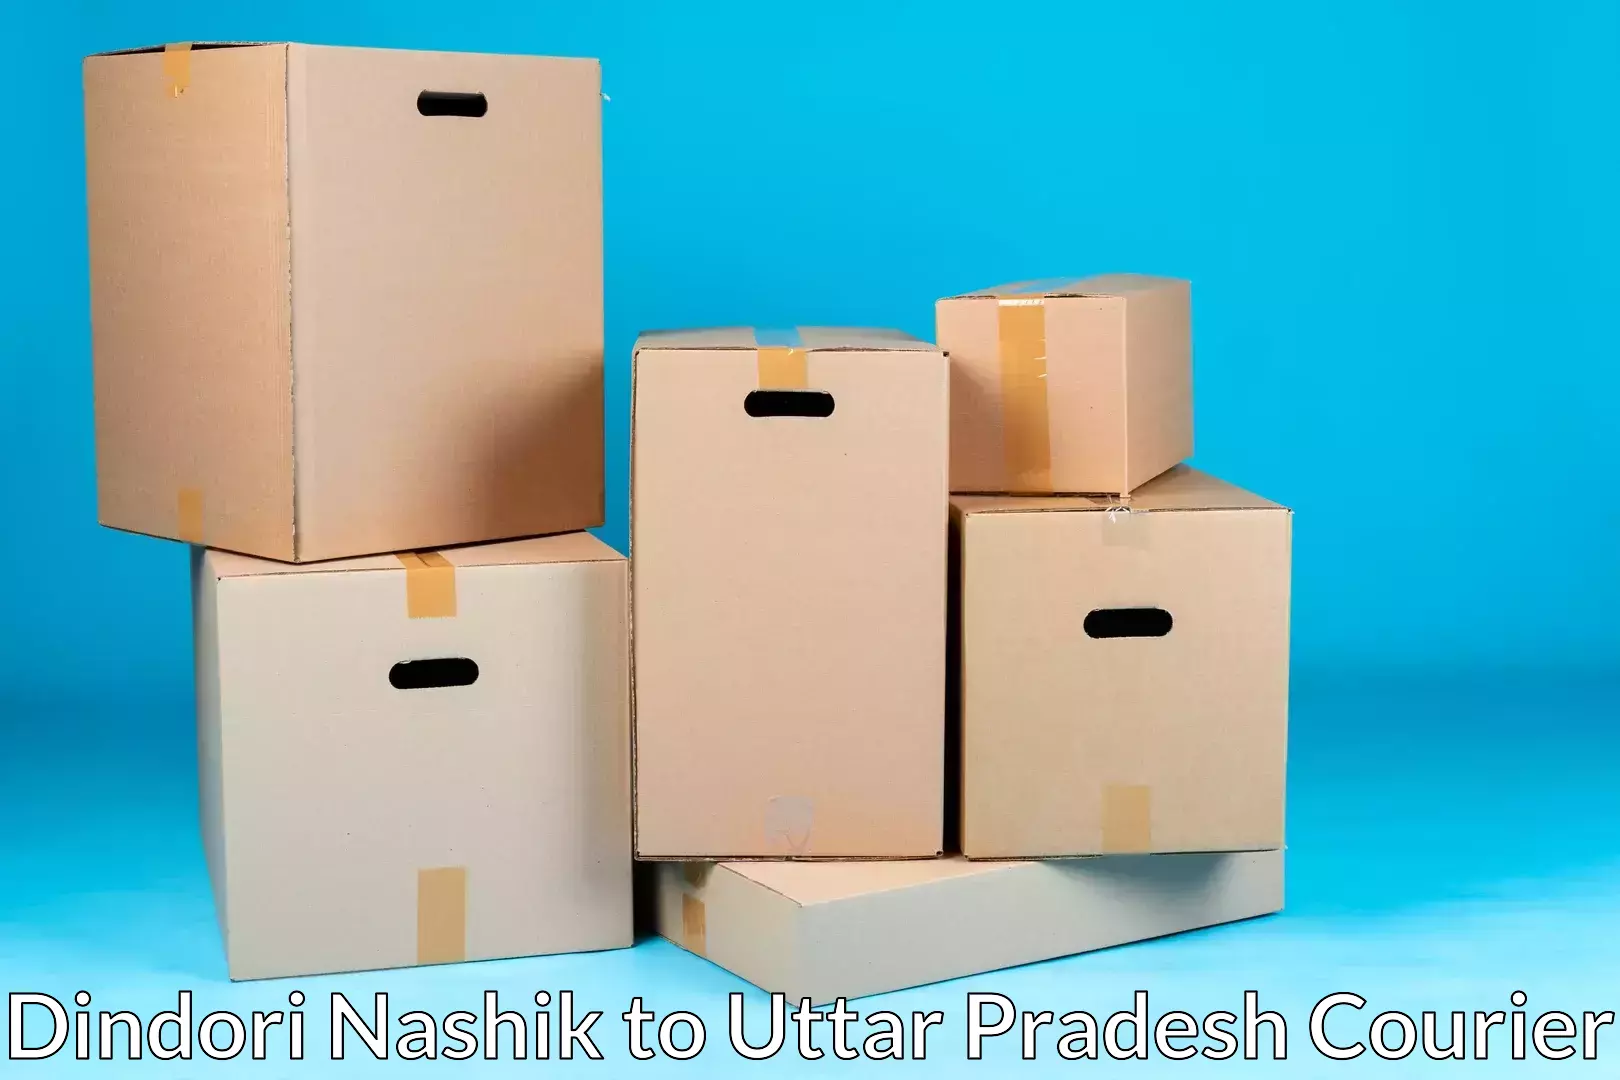 Seamless moving process Dindori Nashik to Badlapur